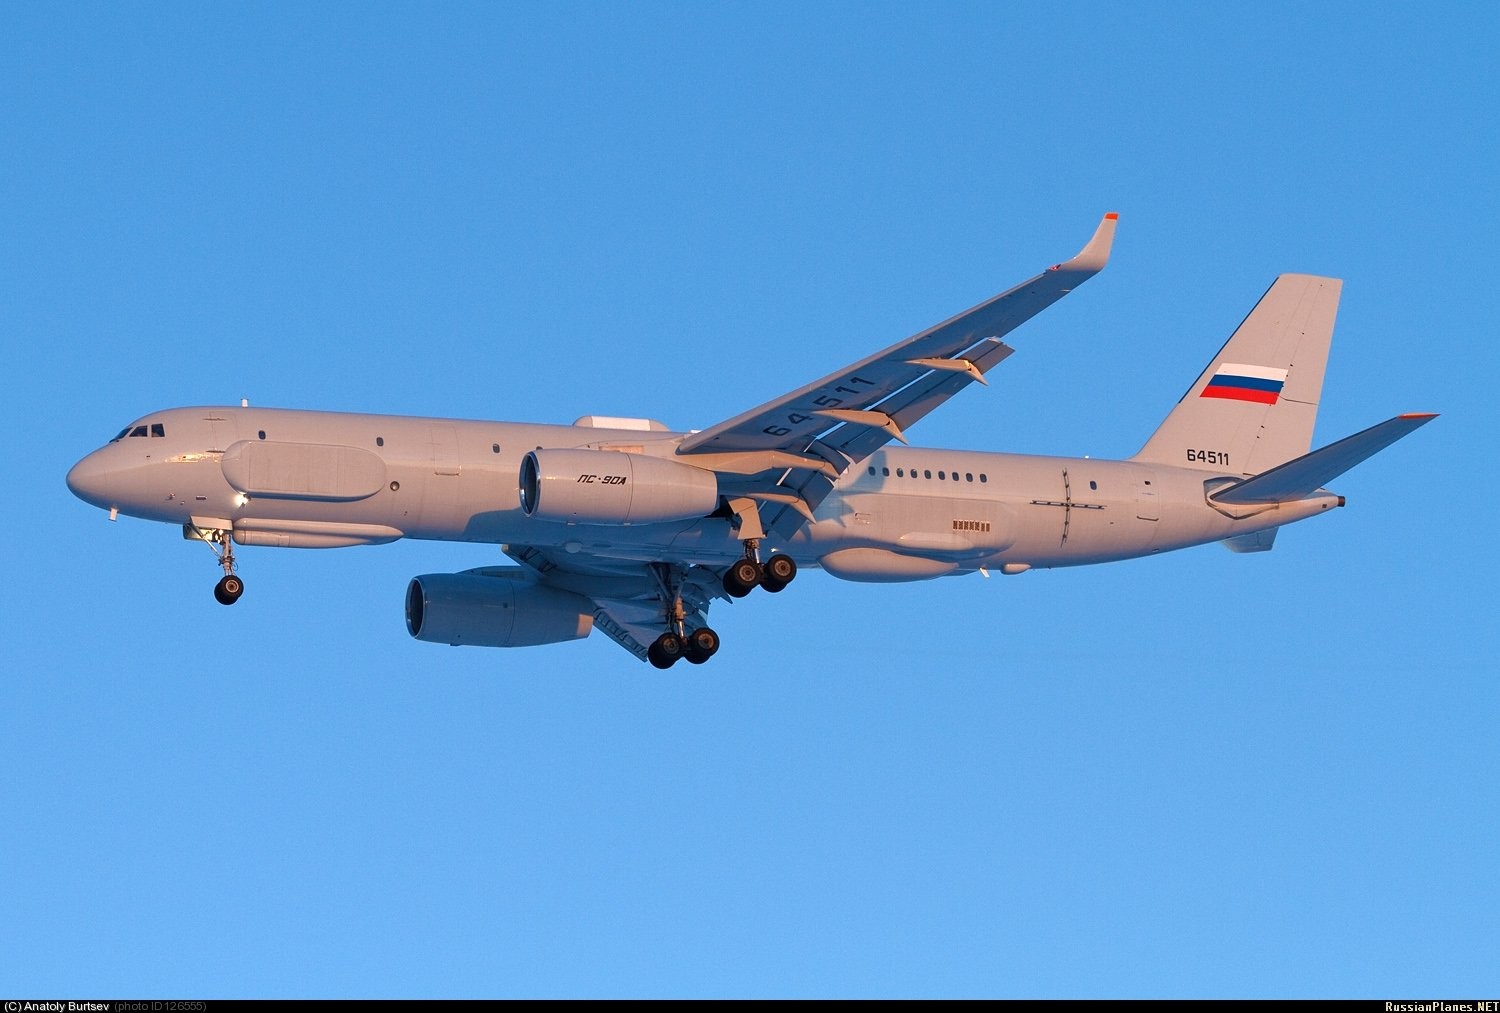 Министерство обороны России заключило контракт на постройку третьего самолета Ту-214Р